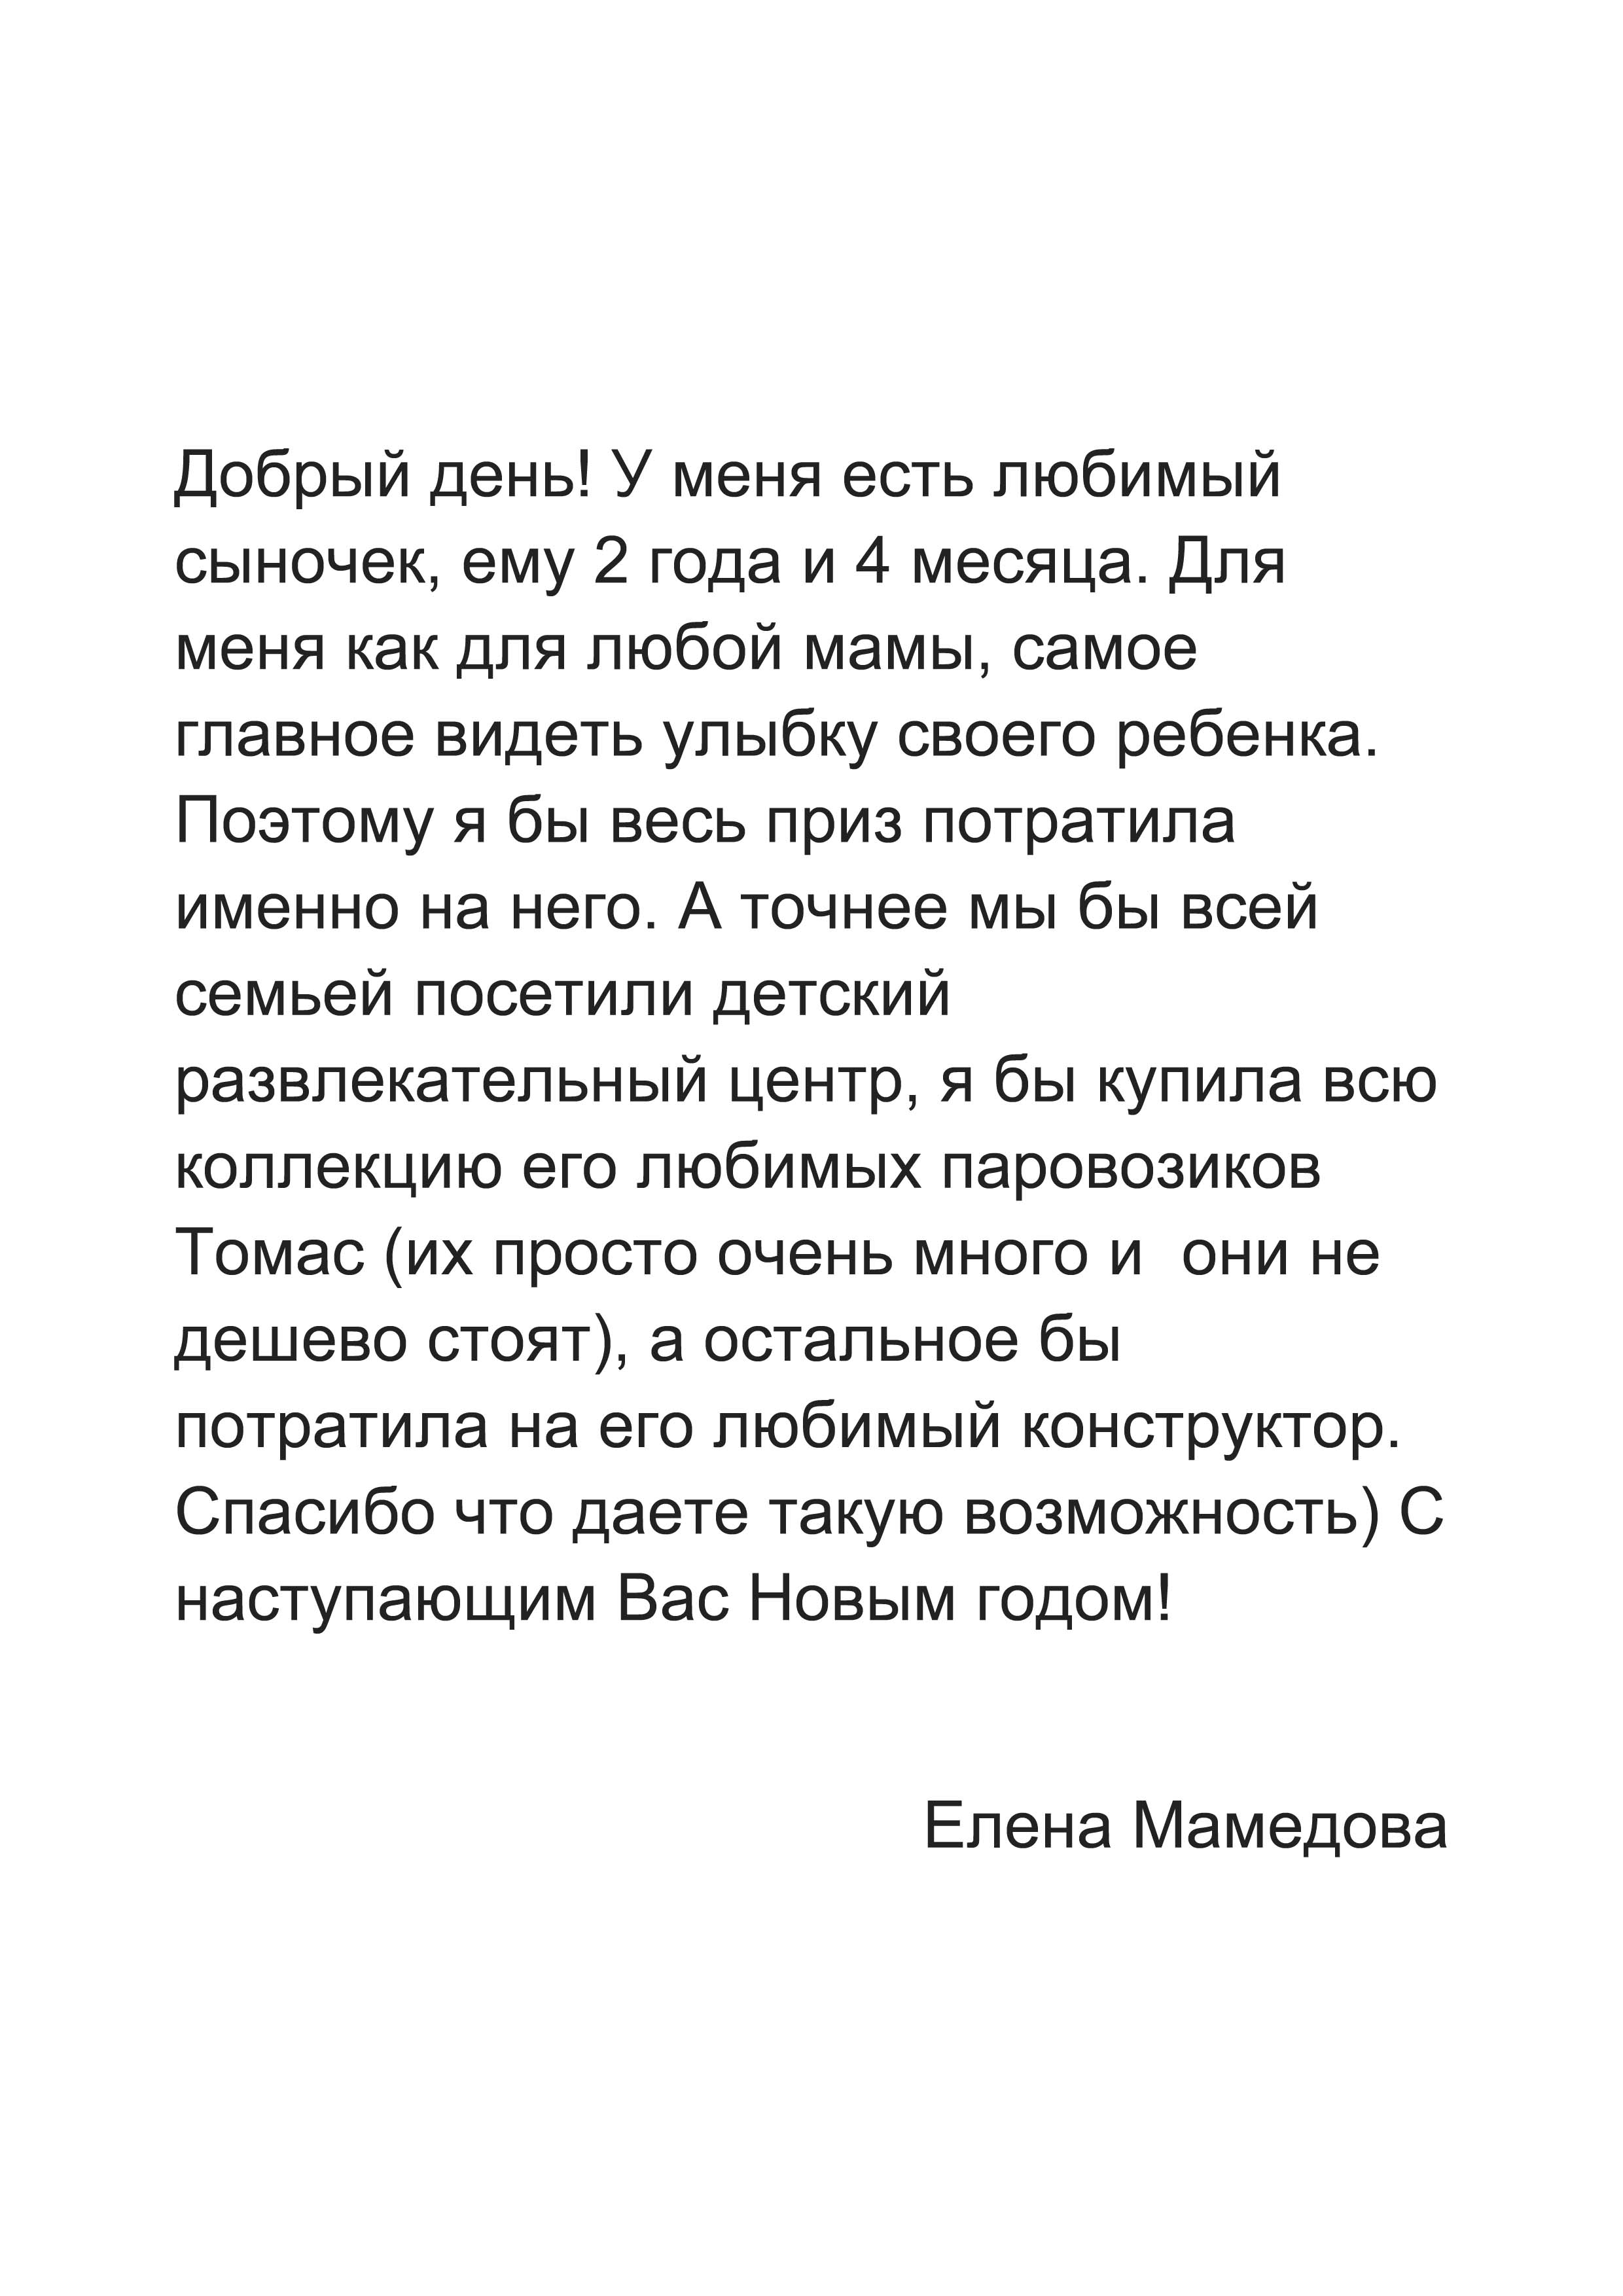 Елена Мамедова